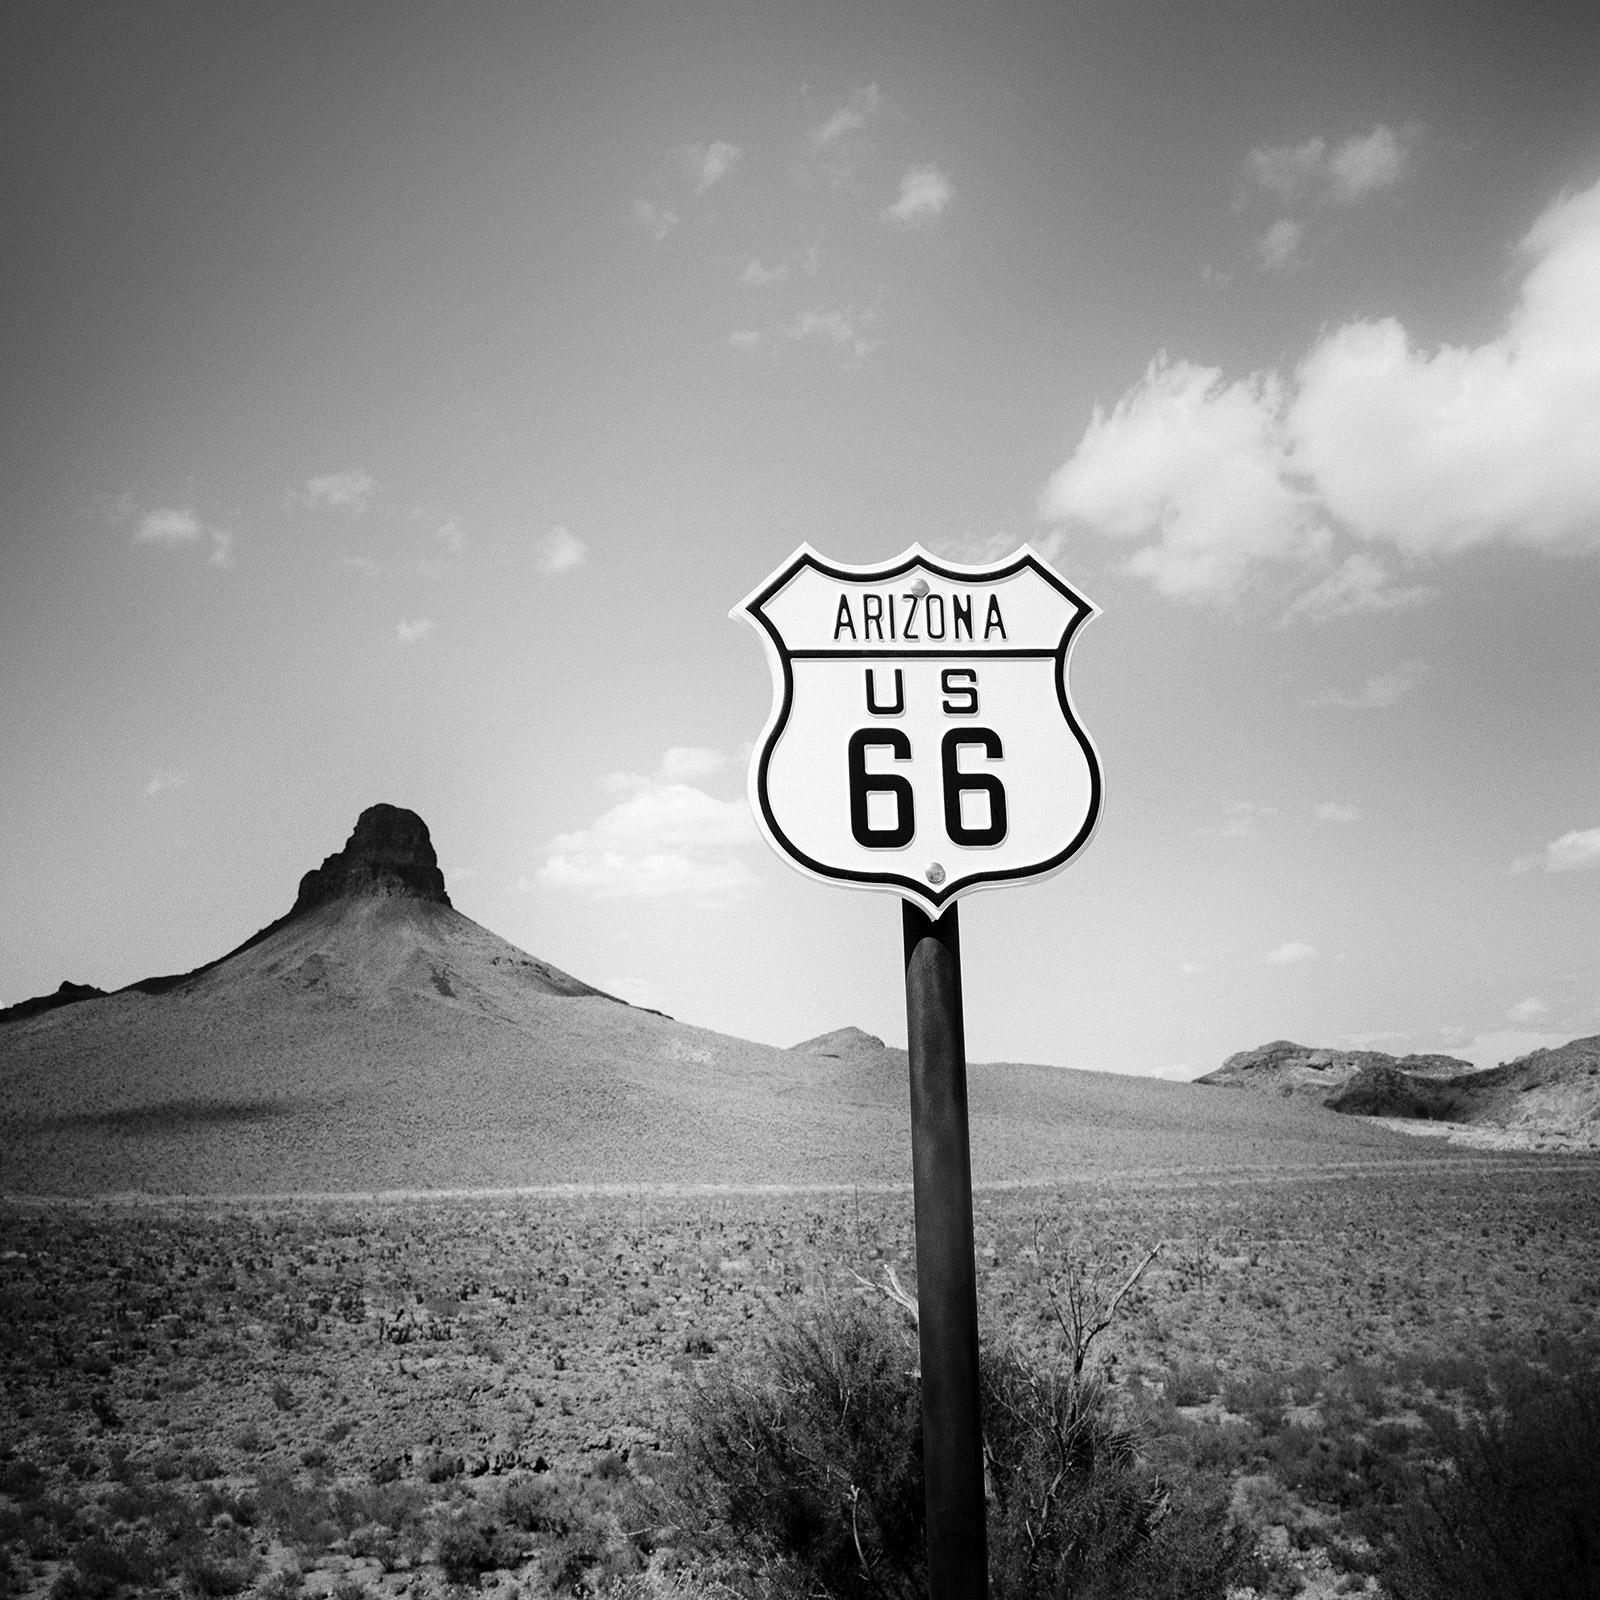 ARIZONA US 66, USA, Schwarz-Weiß-Fotografie-Landschaftsdruck